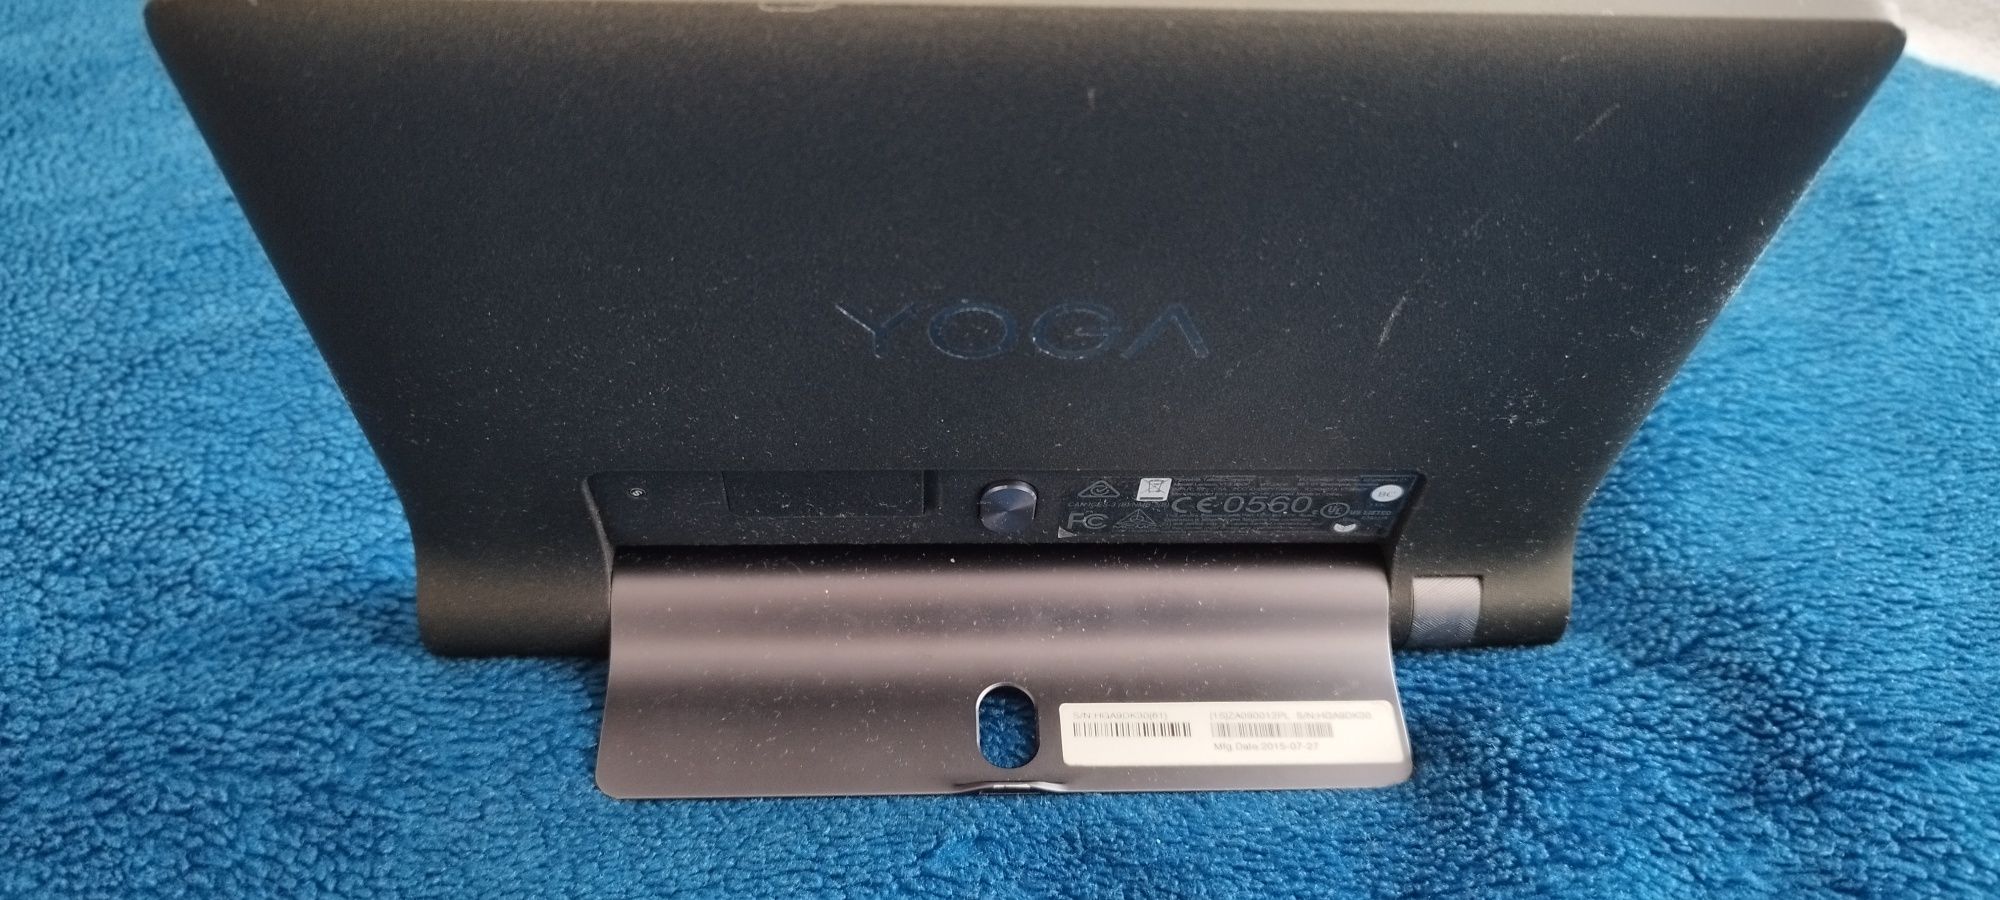 Tablet Lenowo Yoga tab 3